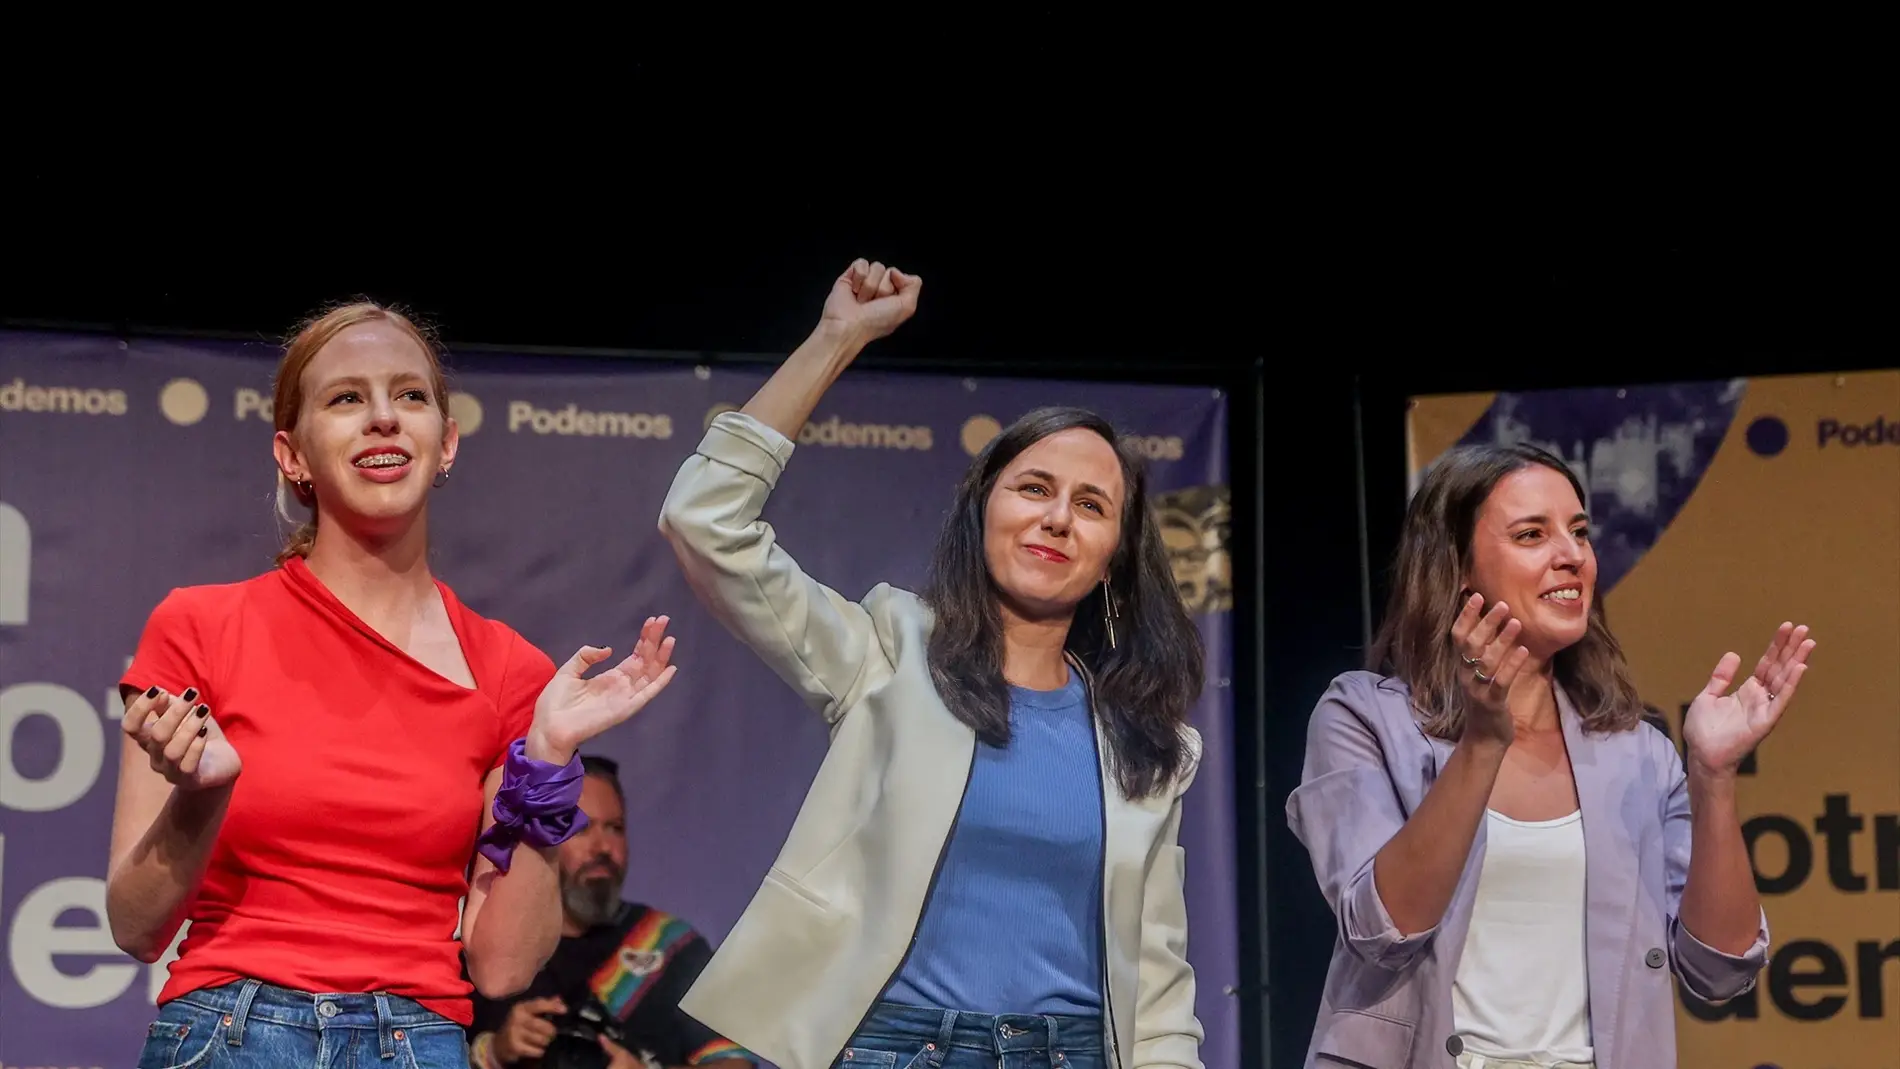 De izquierda a derecha: Lilith Verstrynge, Ione Belarra e Irene Montero en un acto de Podemos. Foto de archivo.